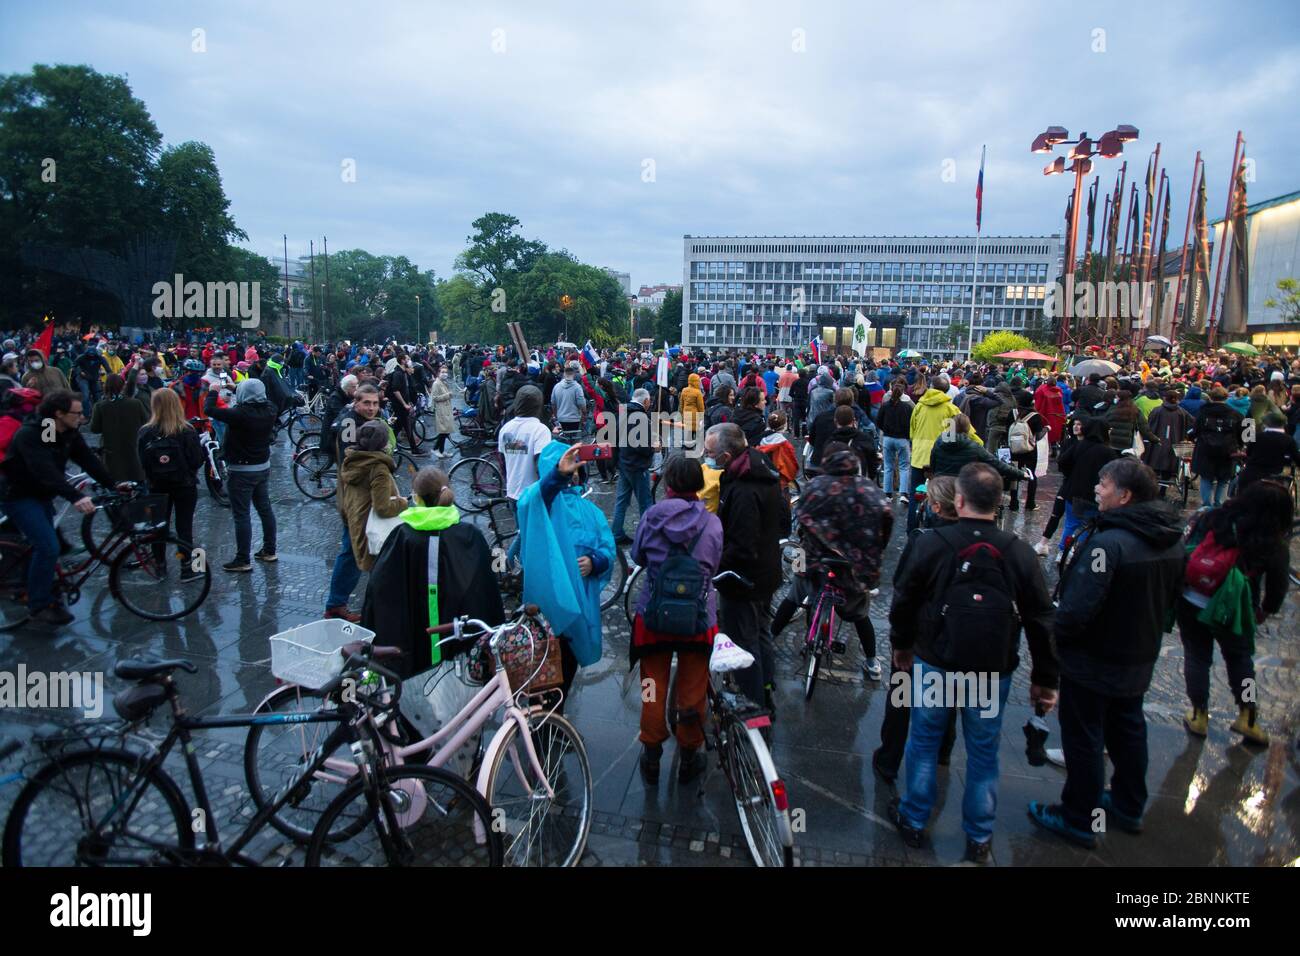 Während der Demonstration versammeln sich Demonstranten auf Fahrrädern vor dem parlamentsgebäude.nach Enthüllungen der Korruption in der Regierung von Janez Janša und Vorwürfen ihrer undemokratischen Herrschaft fuhren über fünftausend Menschen im Zeichen des Protests durch die Regierungsgebäude. Stockfoto